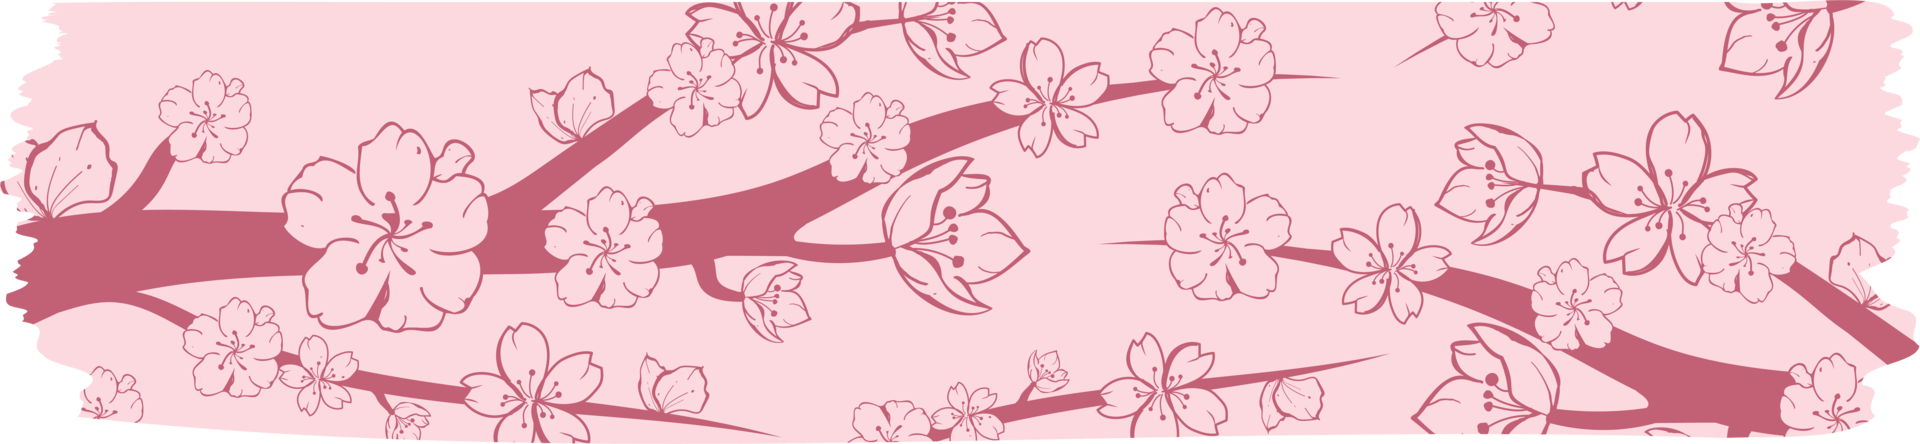 ruban washi avec motif sakura ou fleur de cerisier, illustration de conception de ruban washi sakura png